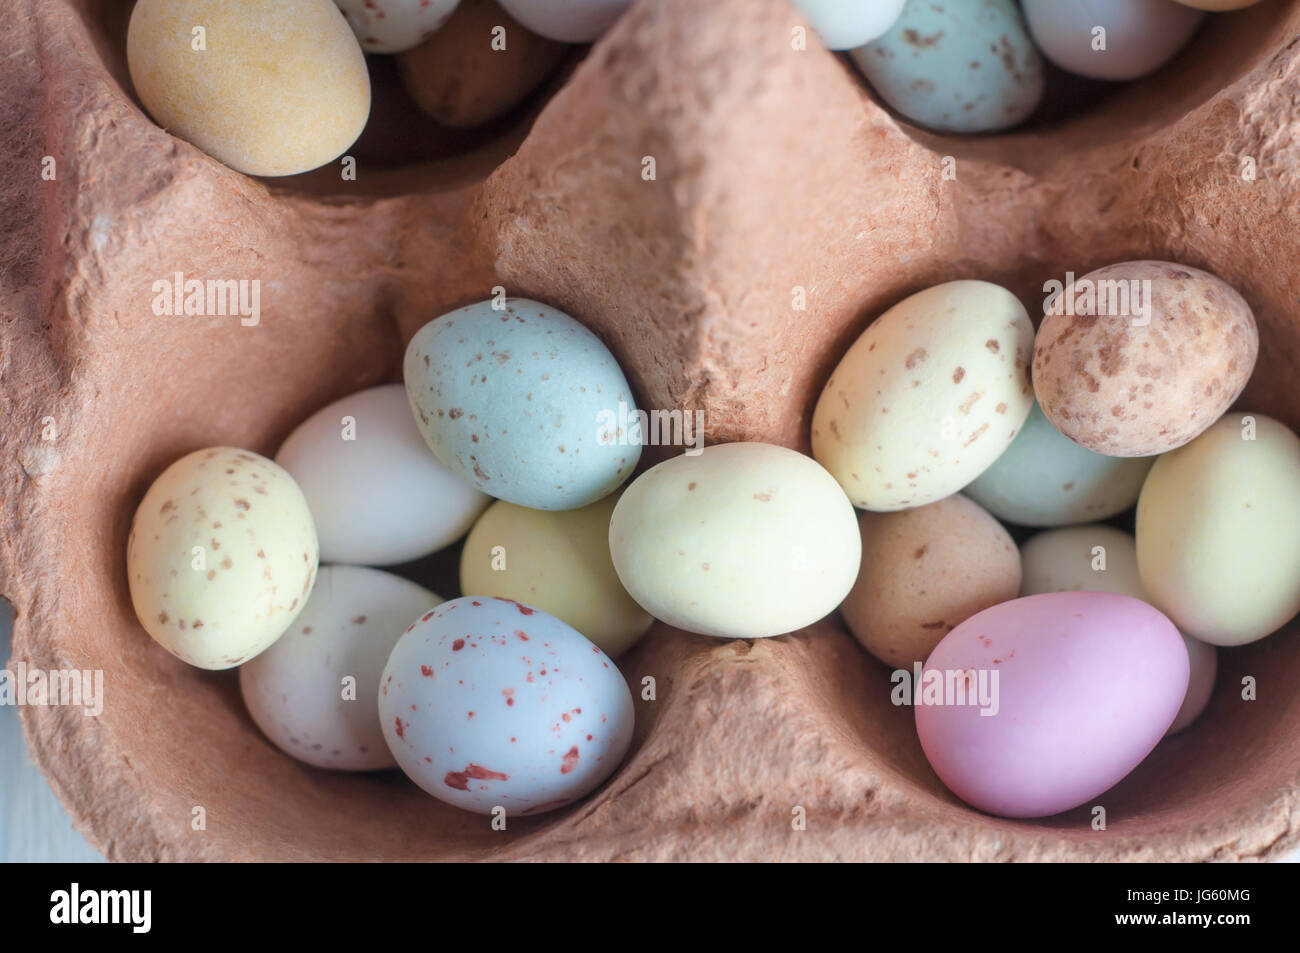 Tettuccio di vista ravvicinata di a forma di uovo (dolci caramelle) ammucchiati in scomparti di un uovo in cartone. Foto Stock